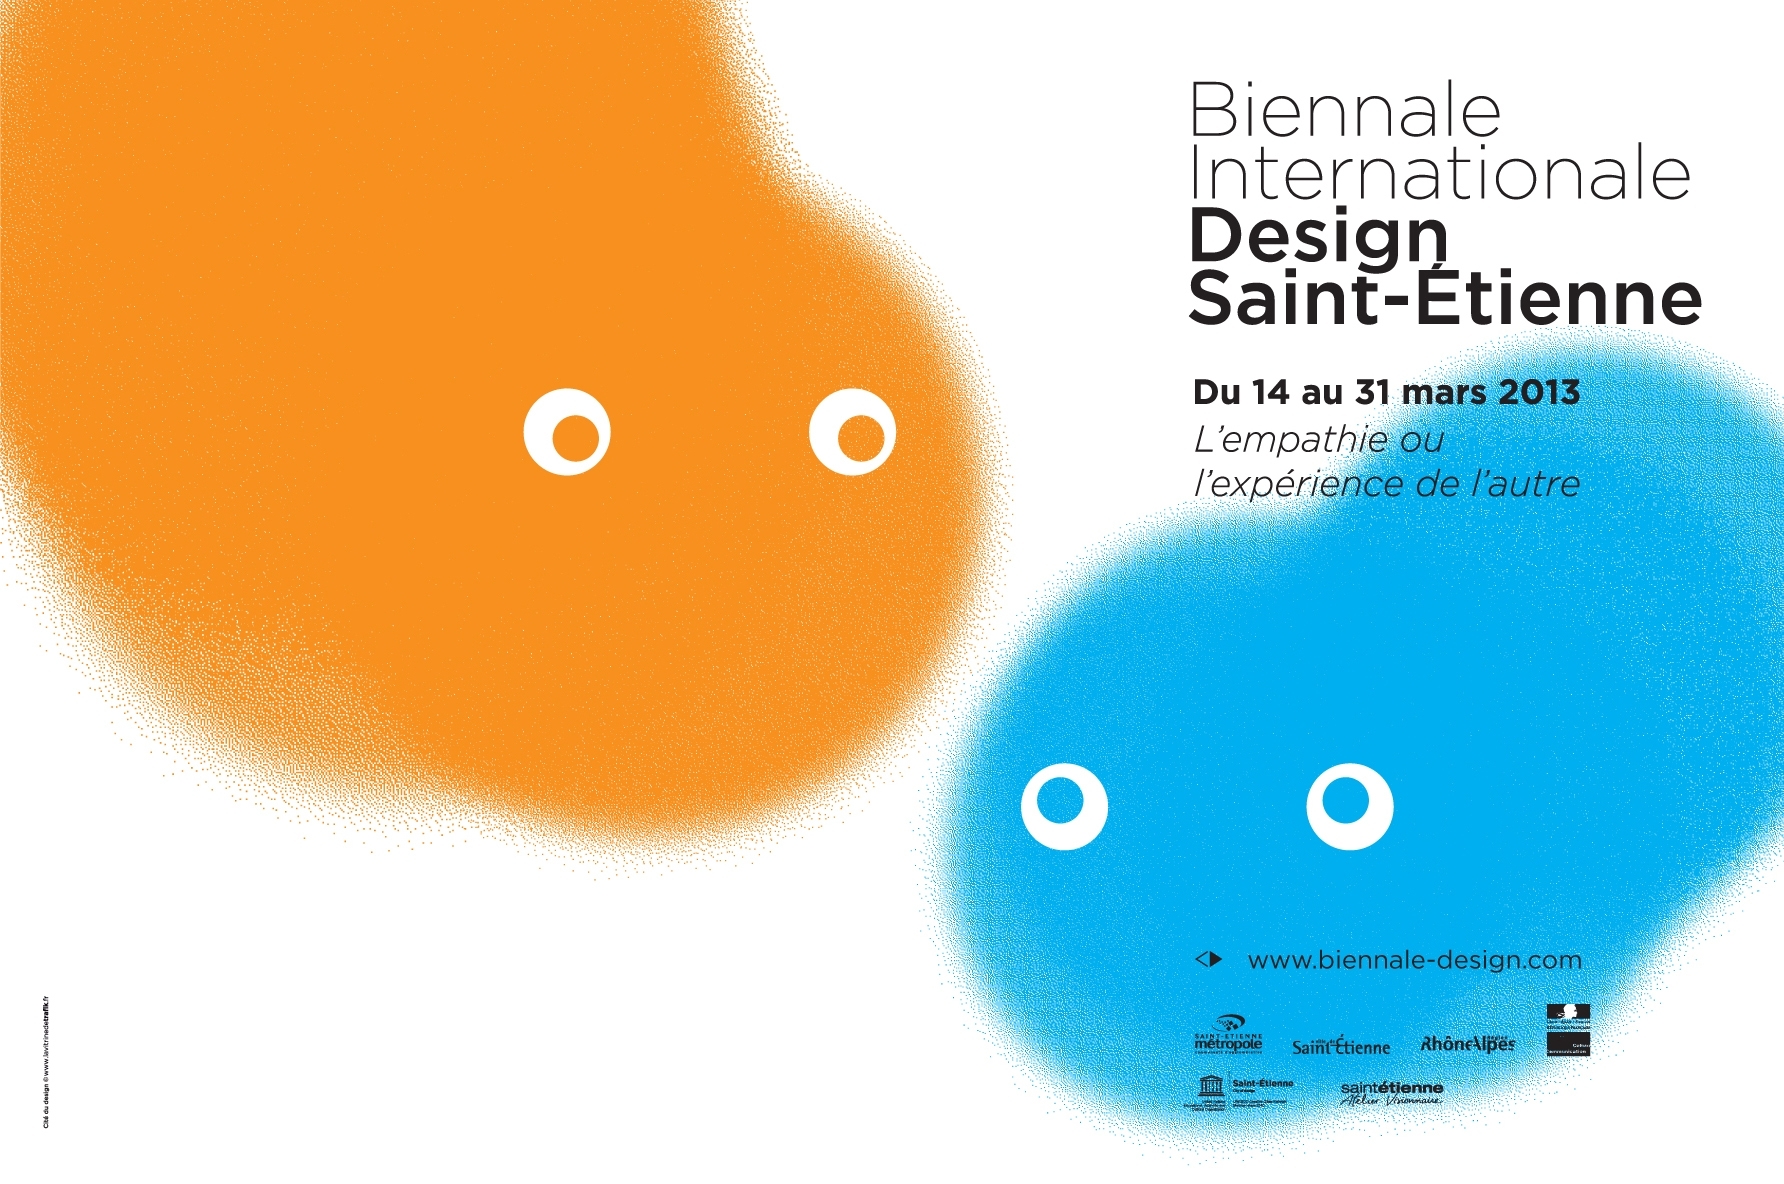 Affiche de la Biennale Internationale Design Saint-Étienne 2013.
Conception : Tr